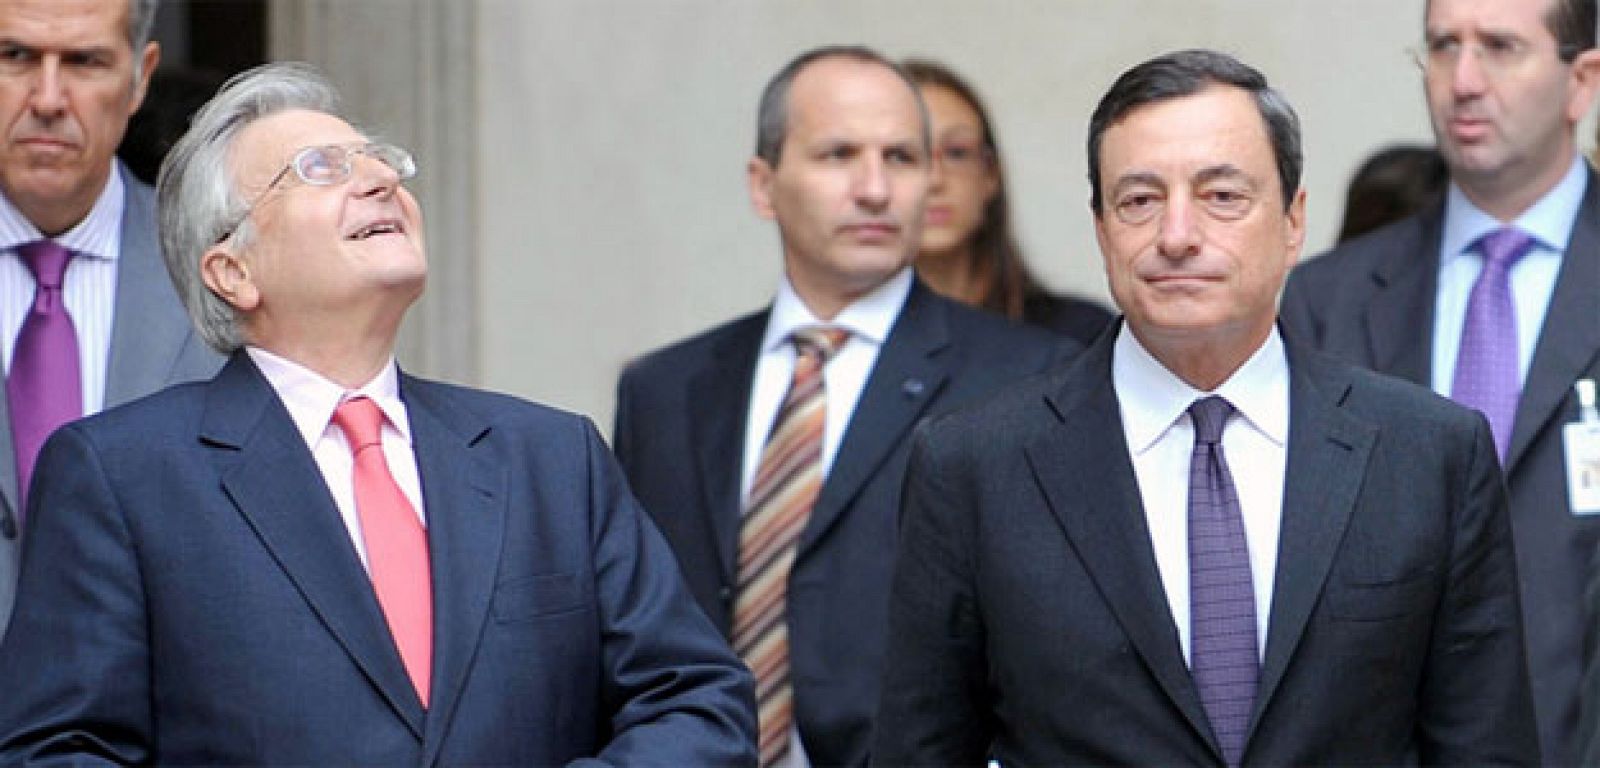 El gobernador del Banco de Italia, Mario Draghi, a la derecha, junto al presidente del banco Central Europeo, Jean Claude Trichet, en uno de los consejos directivos del organismo.